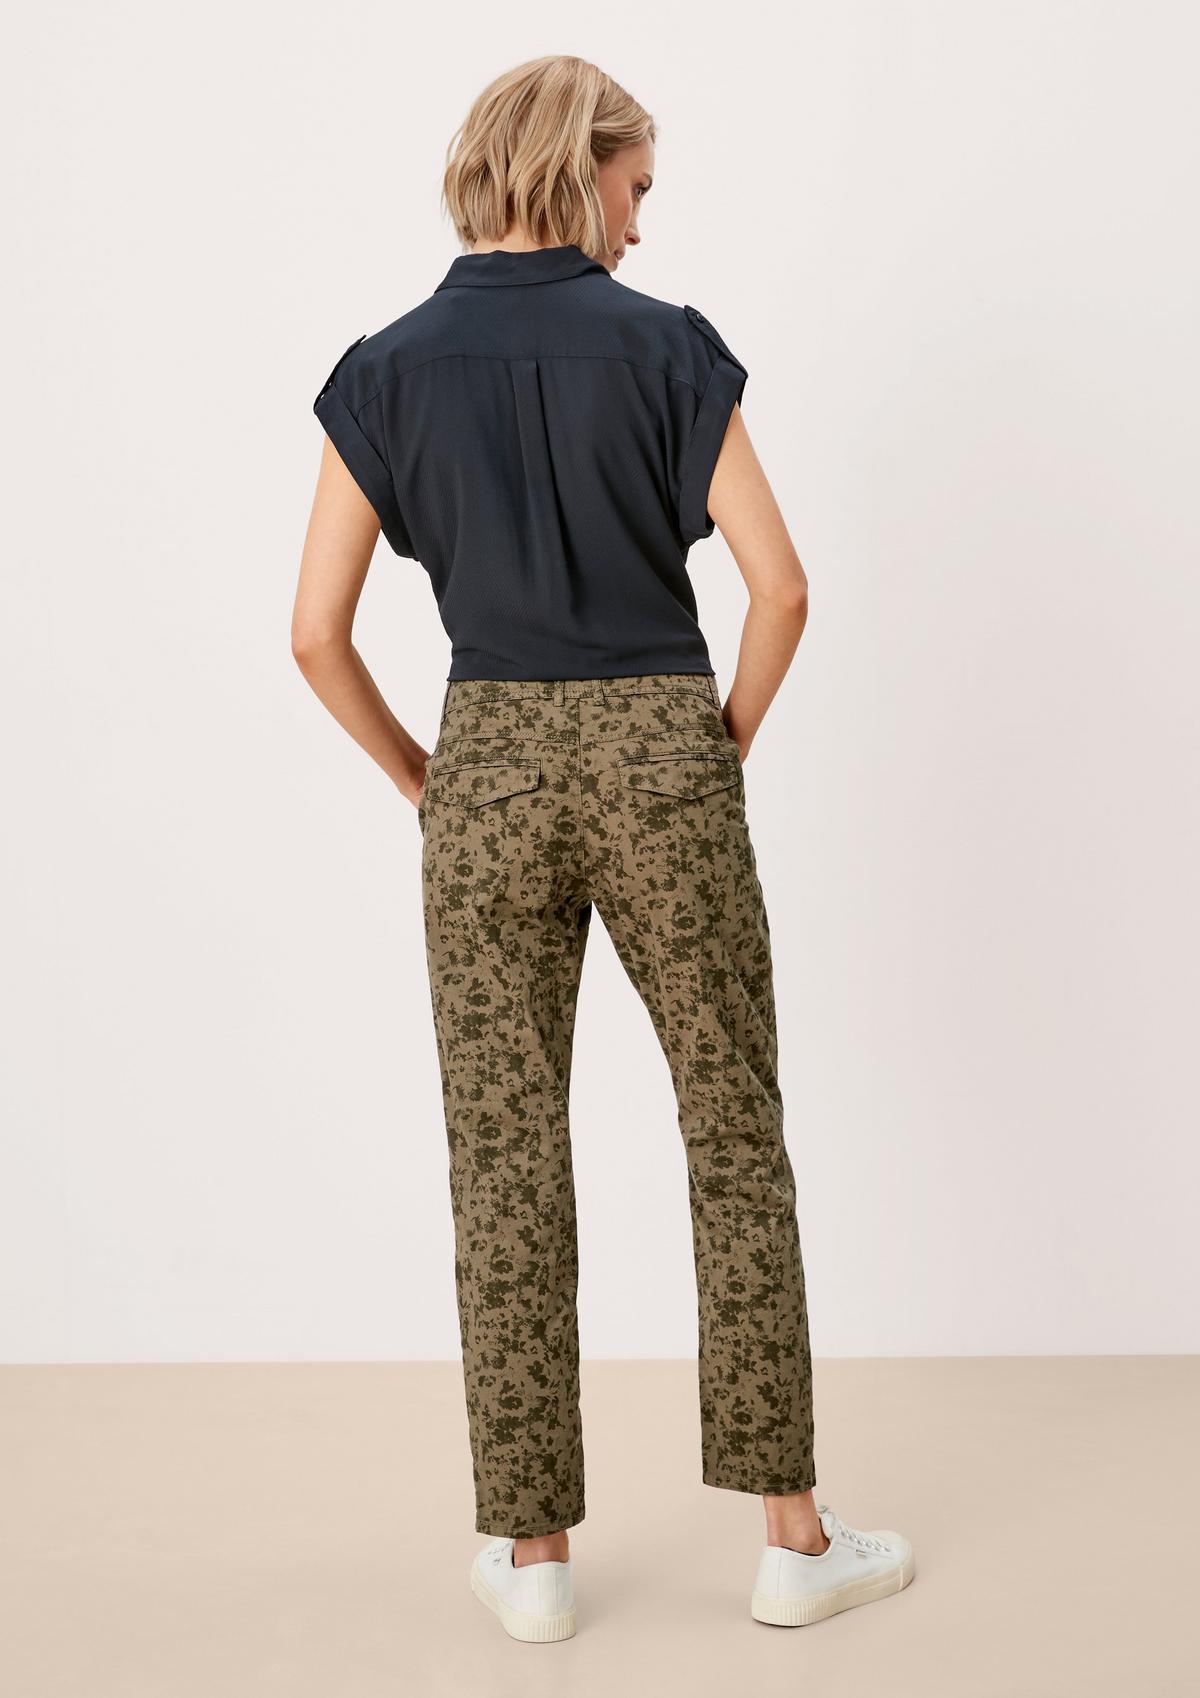 s.Oliver Comfort Chino : pantalon animé d’un imprimé à motifs